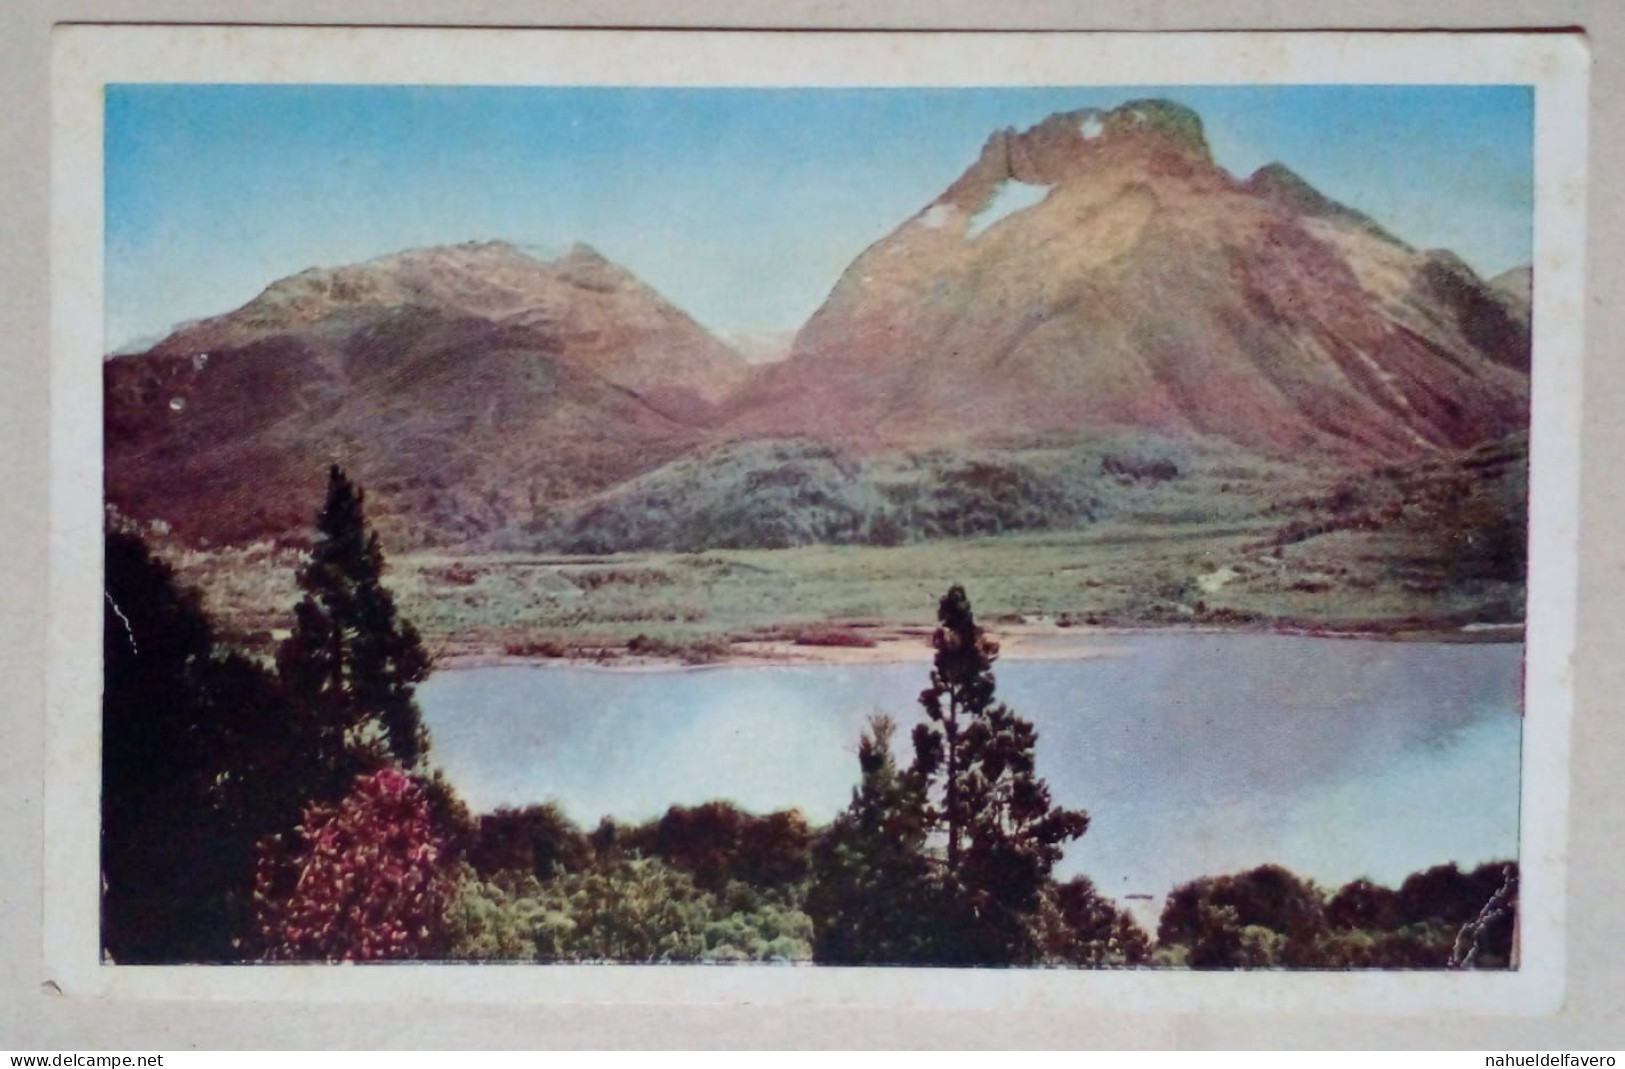 Carte Postale - Parc National Nahuel Huapi, Bariloche, Argentine. - Argentinien